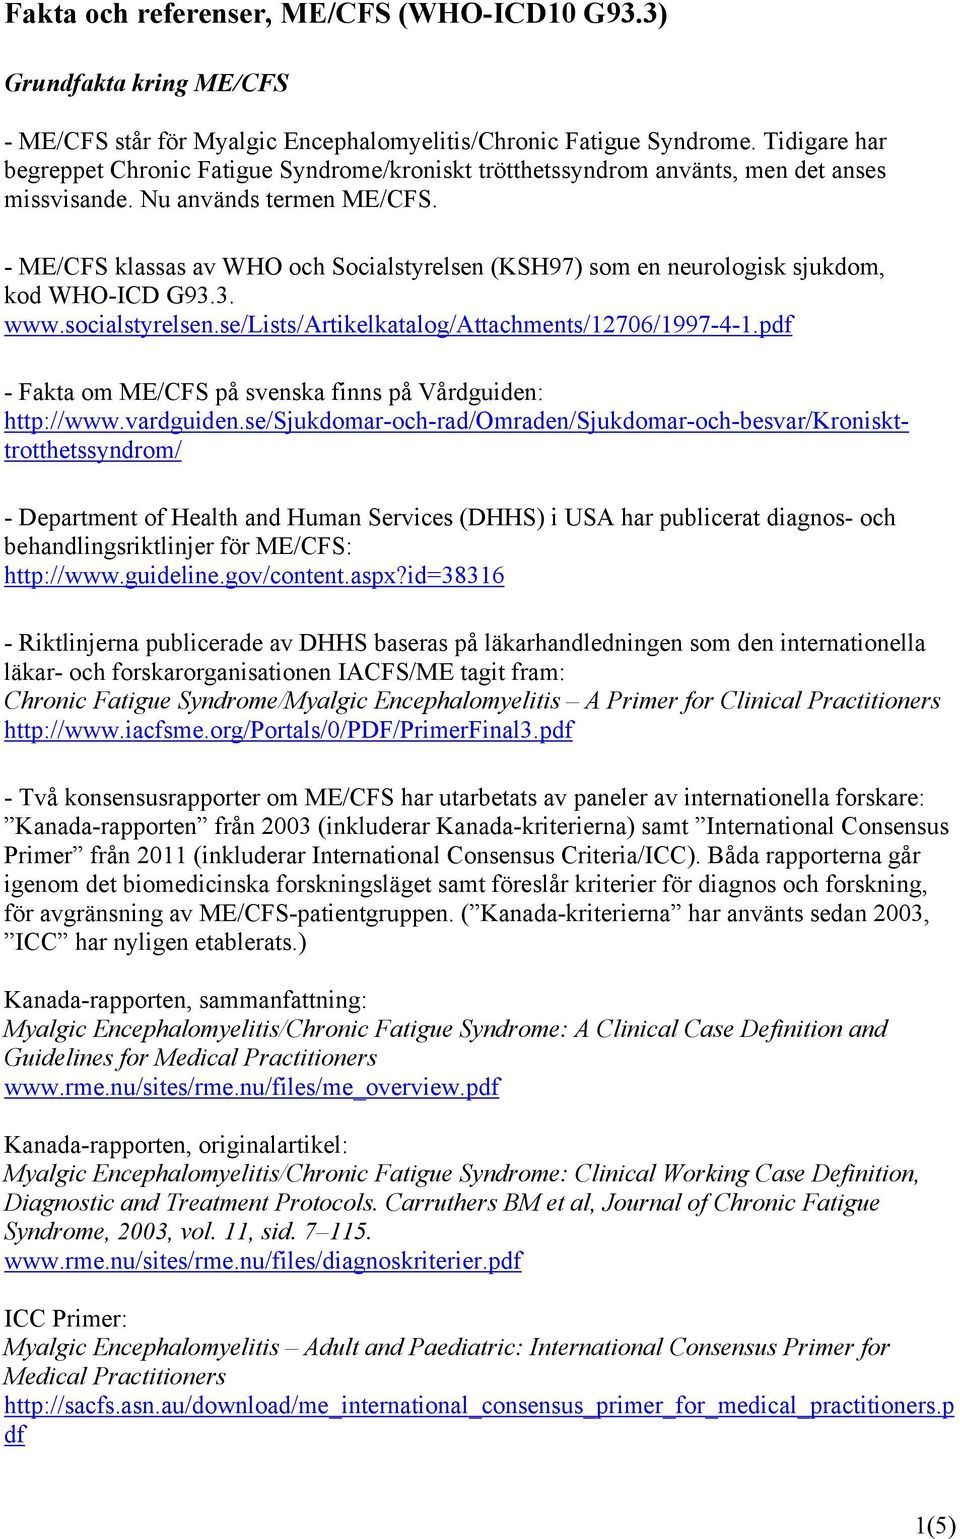 - ME/CFS klassas av WHO och Socialstyrelsen (KSH97) som en neurologisk sjukdom, kod WHO-ICD G93.3. www.socialstyrelsen.se/lists/artikelkatalog/attachments/12706/1997-4-1.